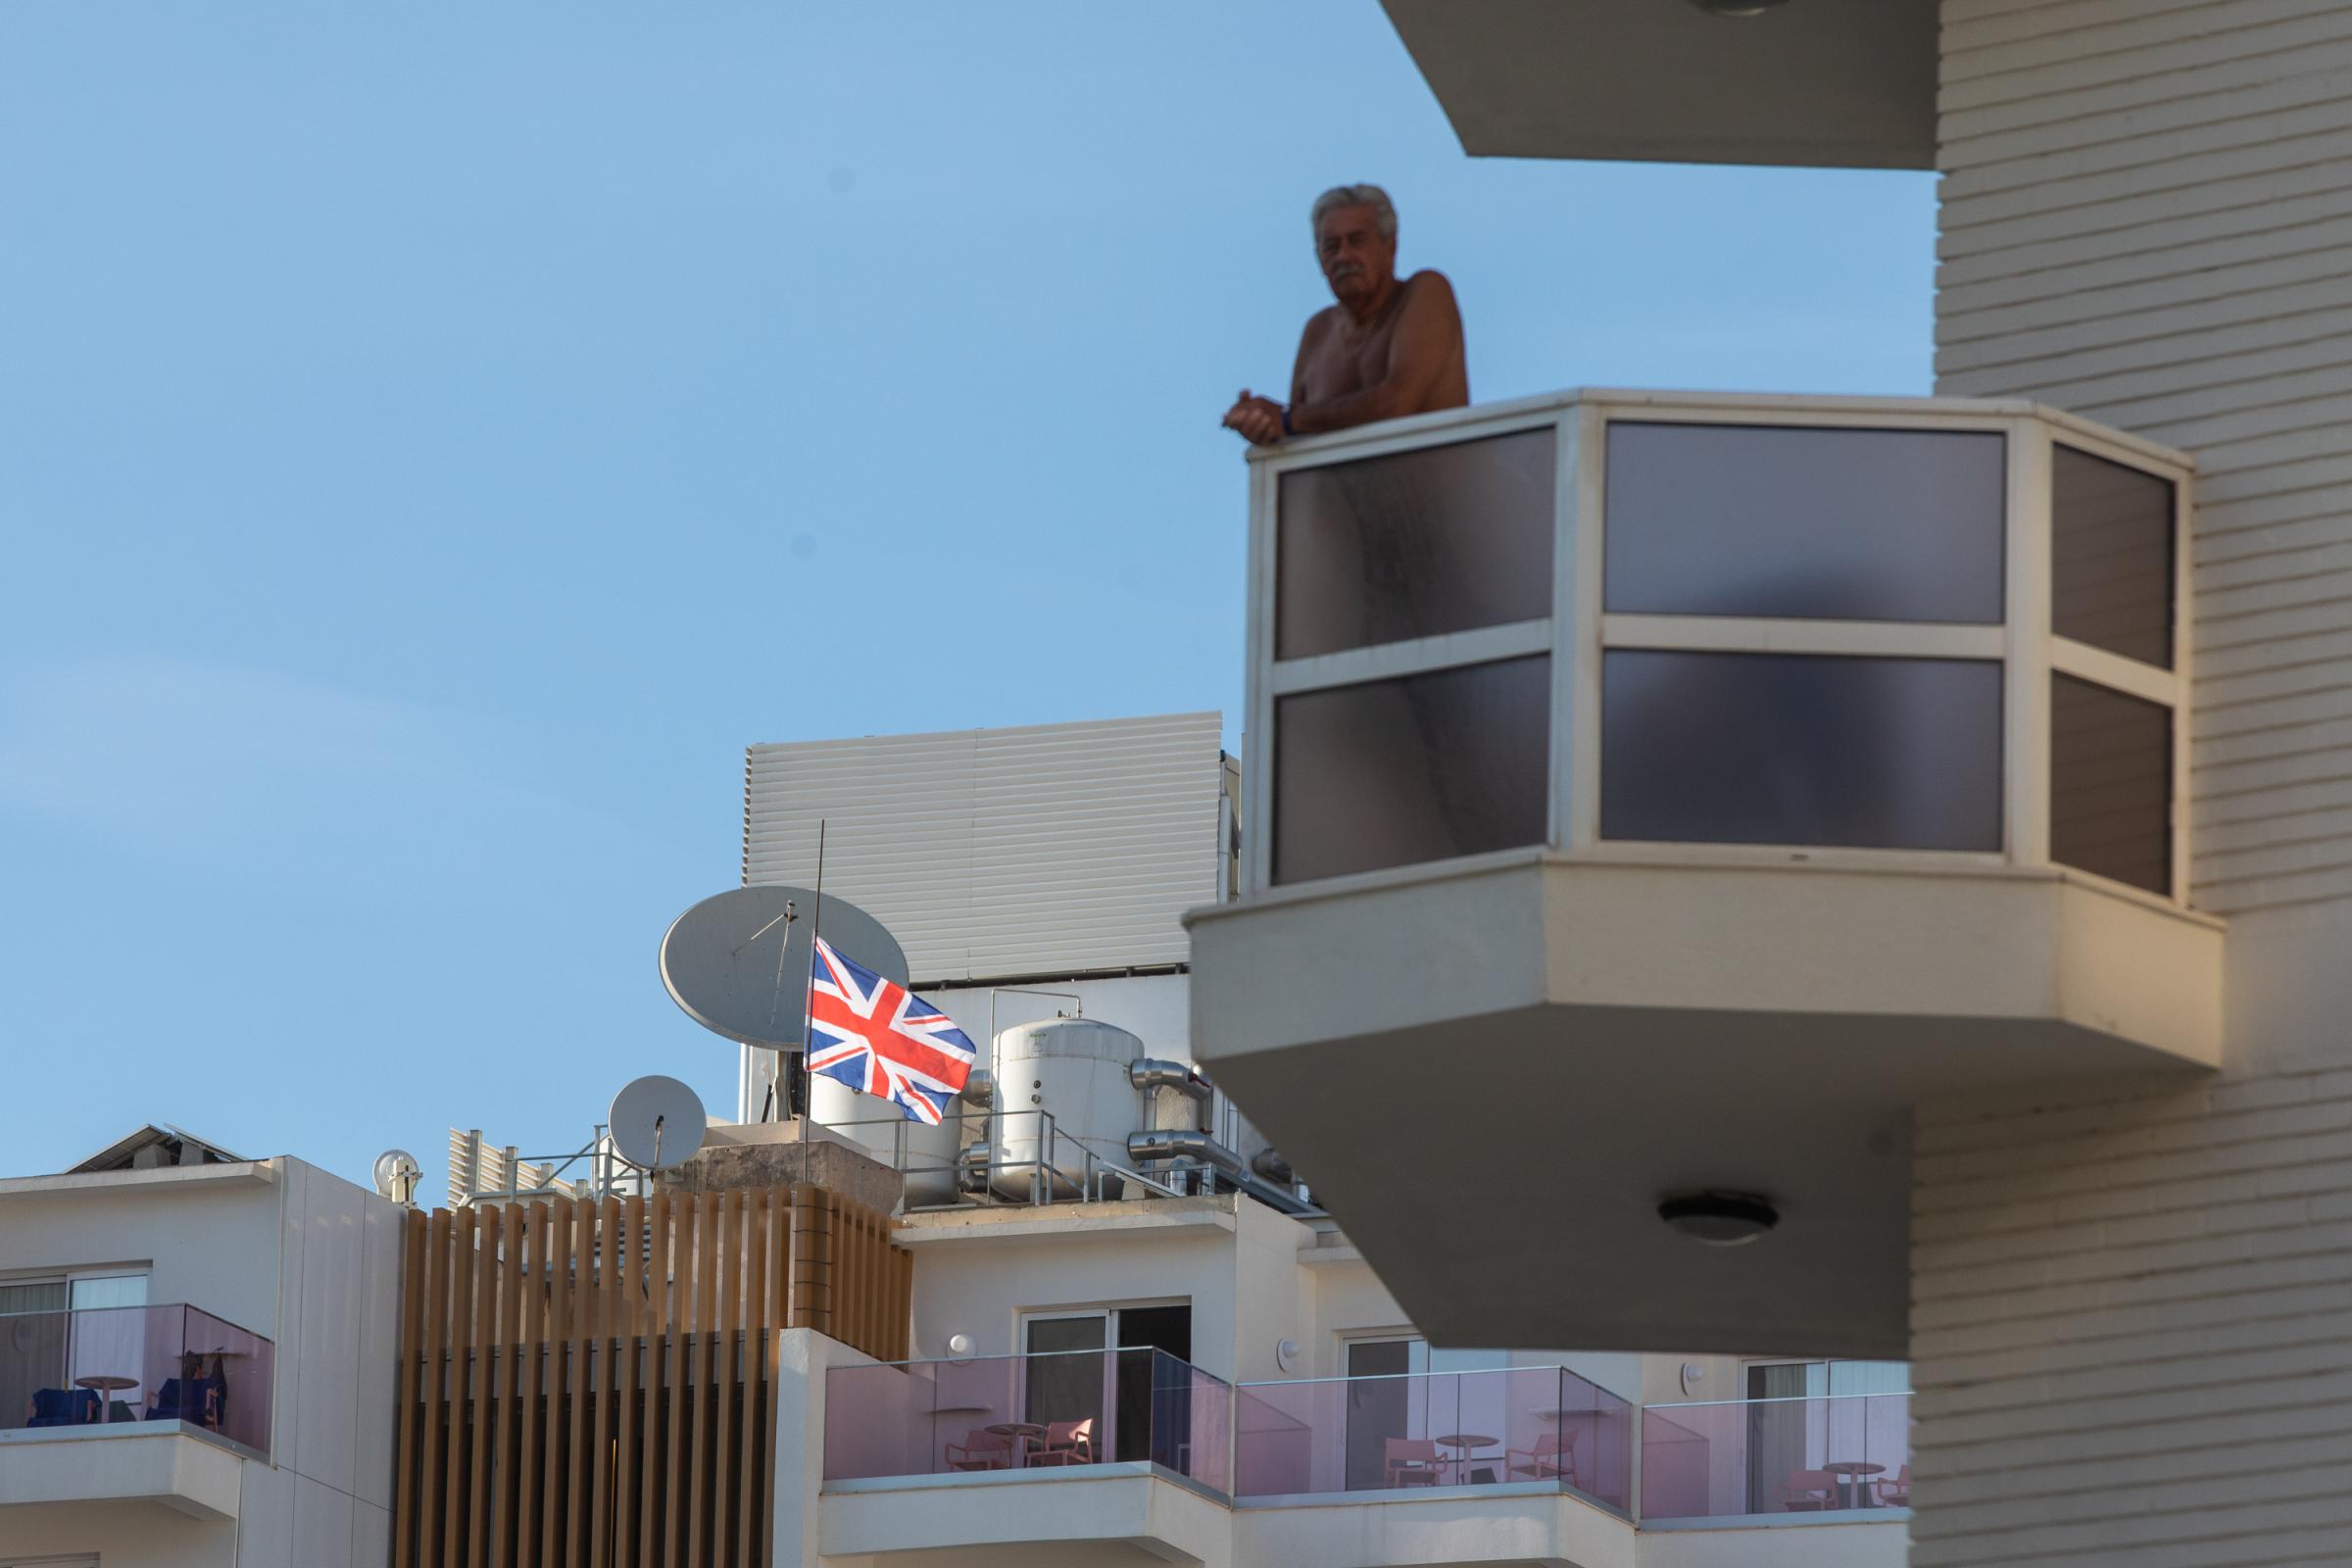 British Tourists In Benidorm Pay Tribute To Queen Elizabeth II - BENIDORM, SPAIN - SEPTEMBER 10: A Benidorm hotel has...